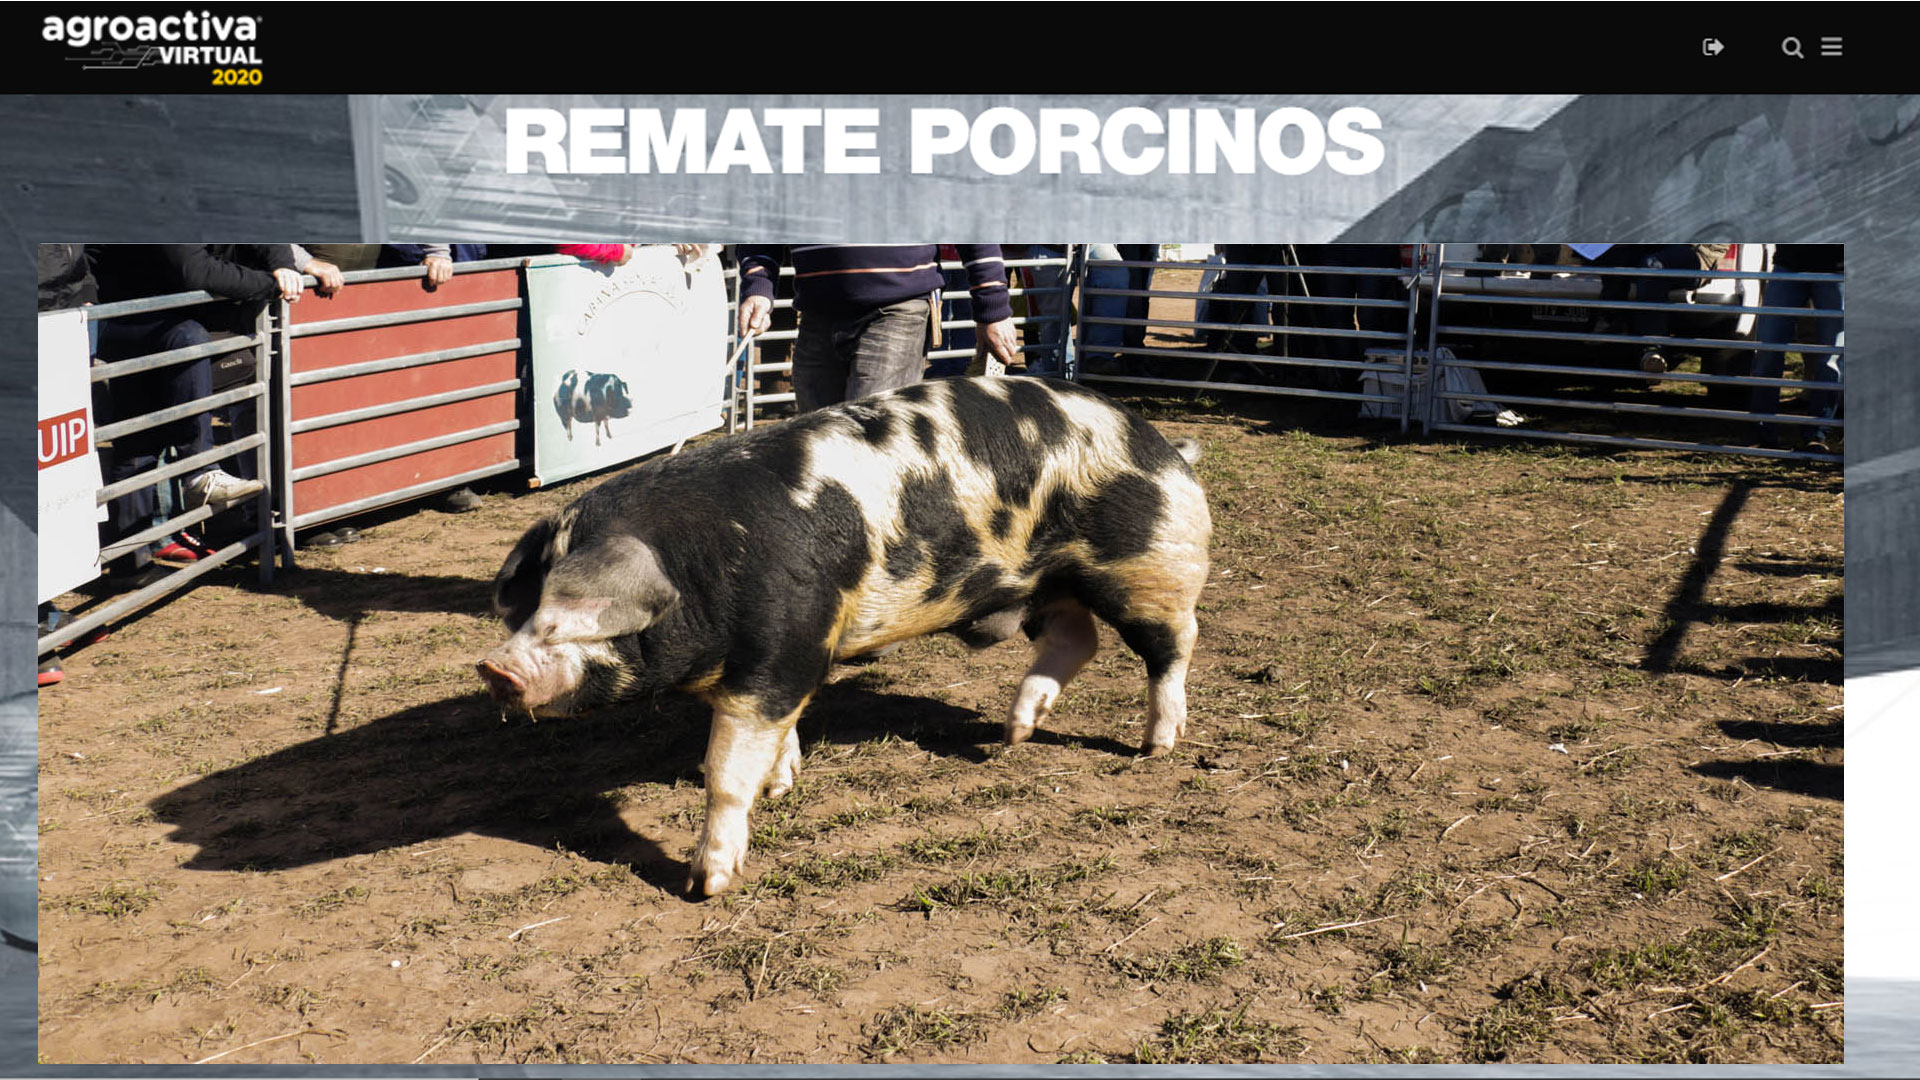 Se pagaron 173.000 pesos por un reproductor porcino en el remate de AgroActiva Virtual